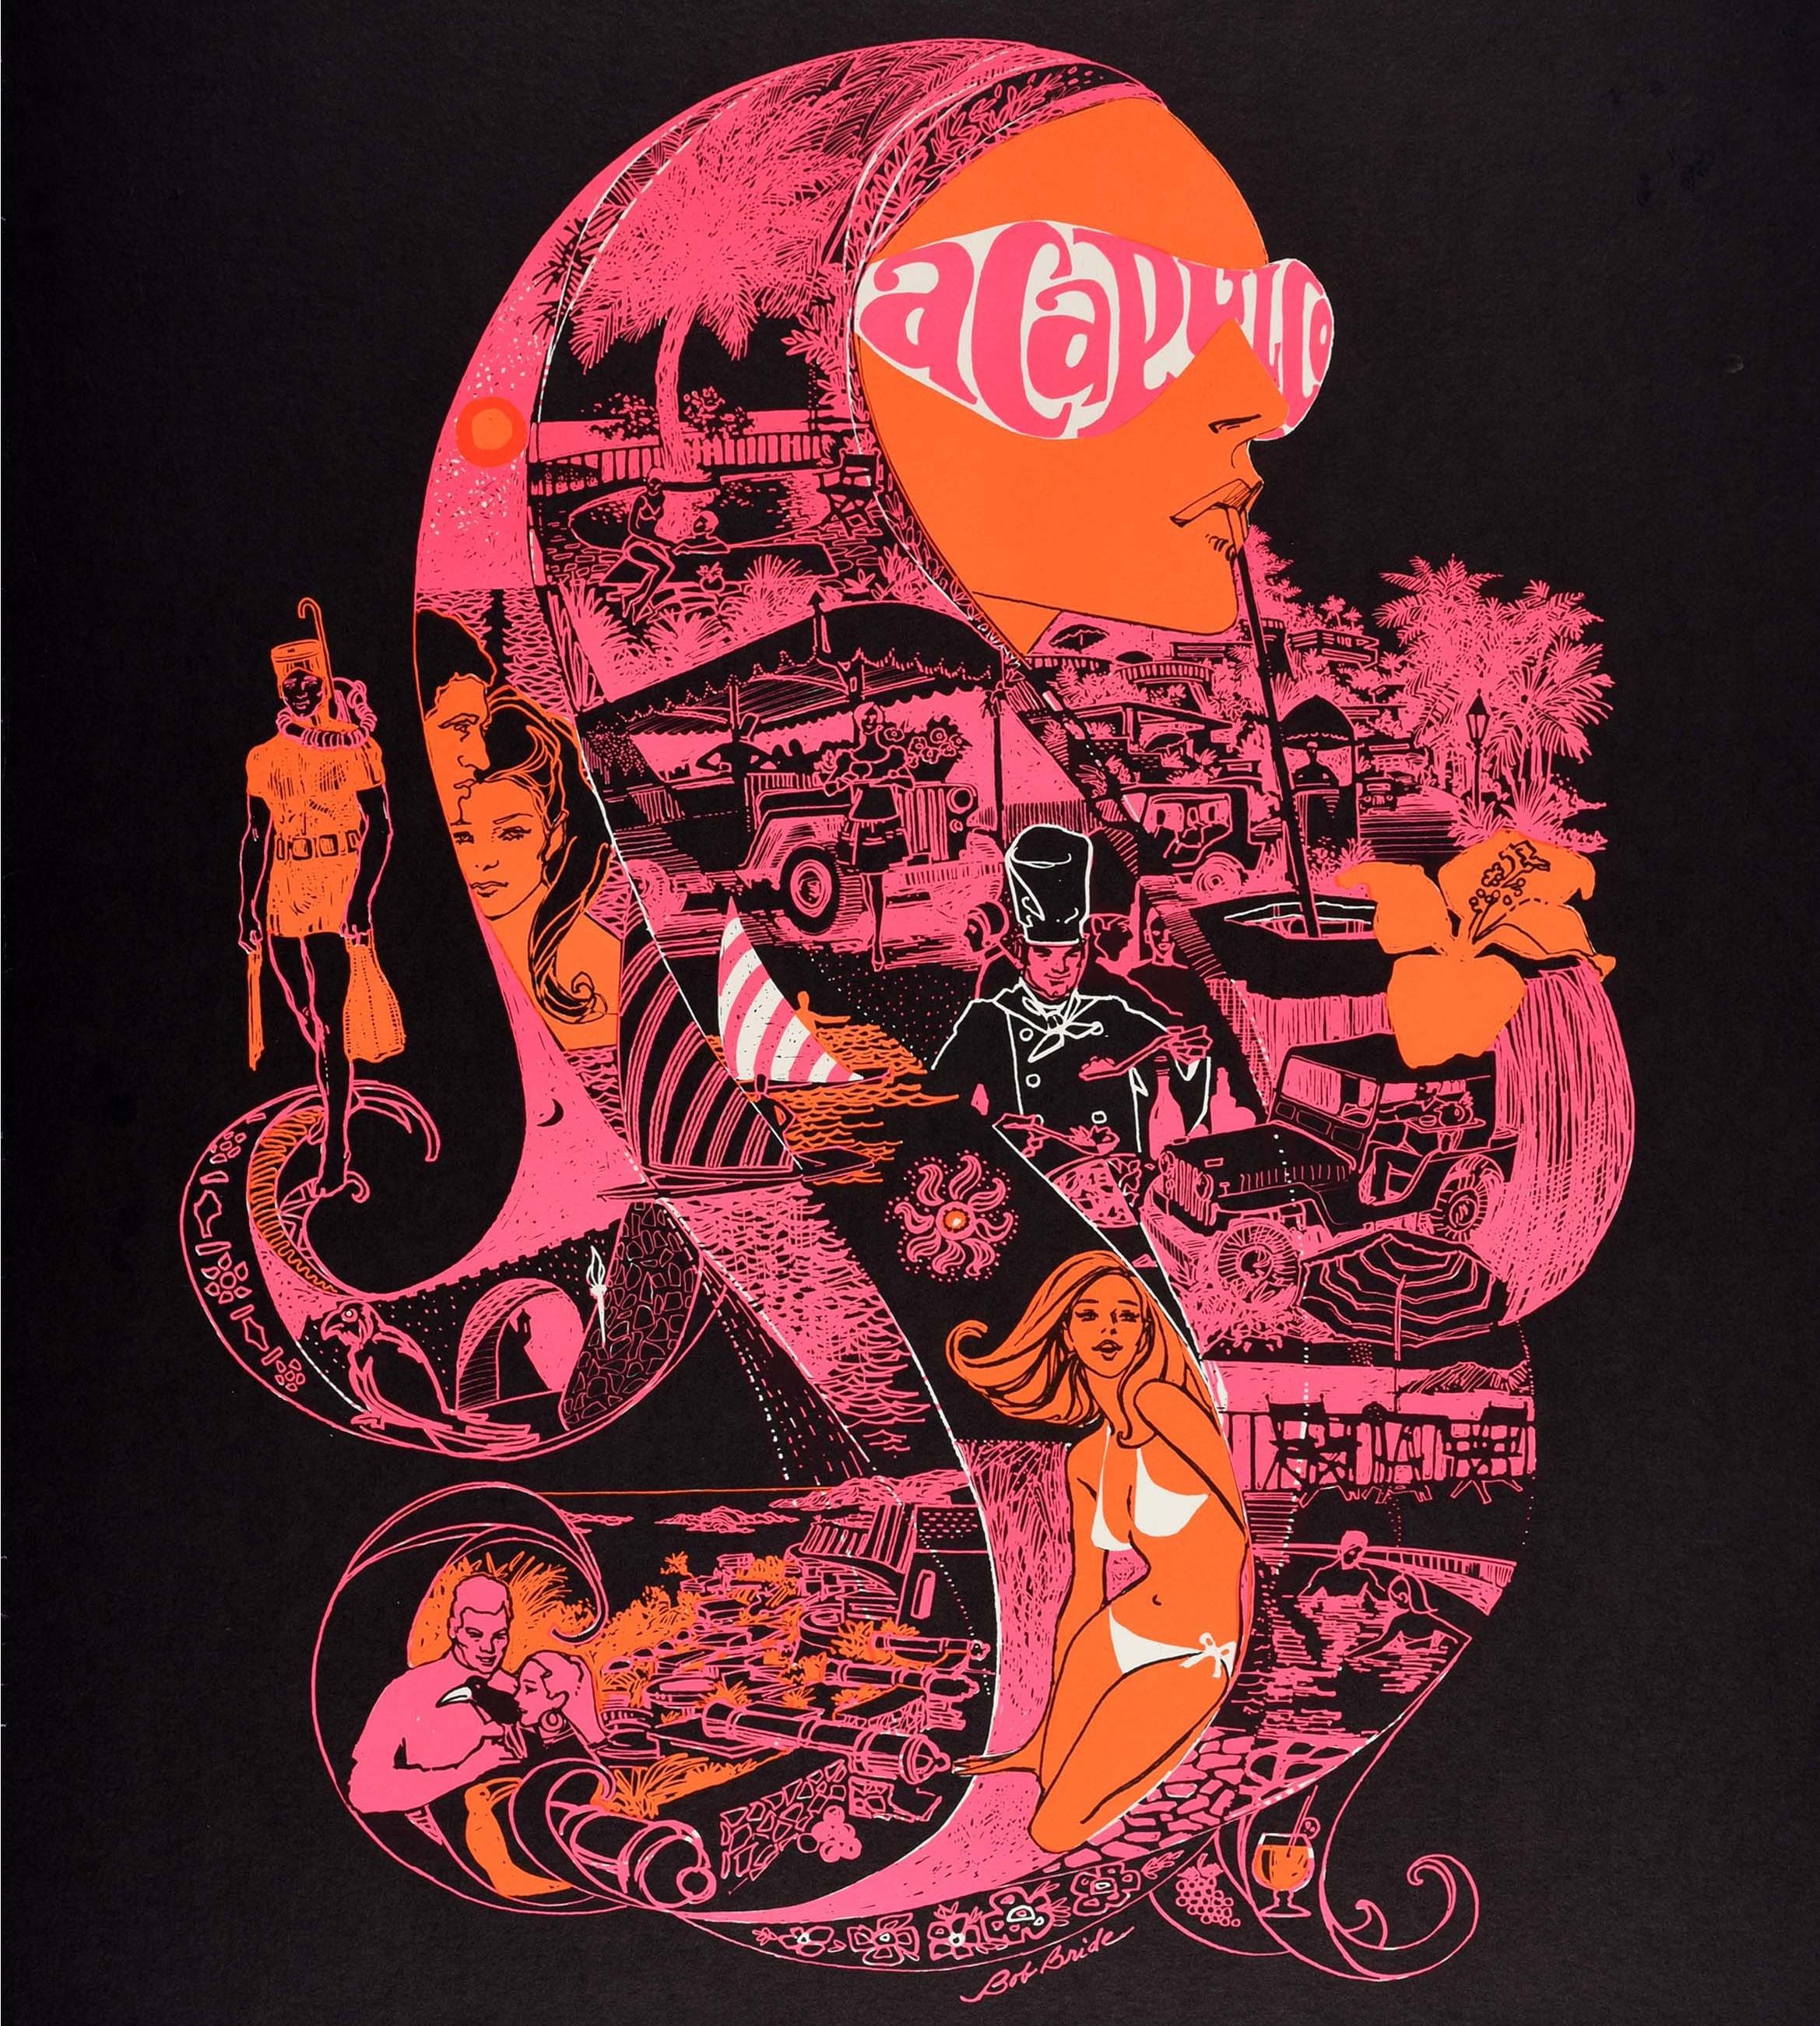 Original-Reisewerbeplakat für Acapulco Aeronaves de Mexico Mexikos größte Fluggesellschaft mit einem farbenfrohen Entwurf des Illustrators und Plakatkünstlers Bob Bride (geb. 1933), der ein psychedelisches Bild einer Dame mit dem Wort Acapulco auf